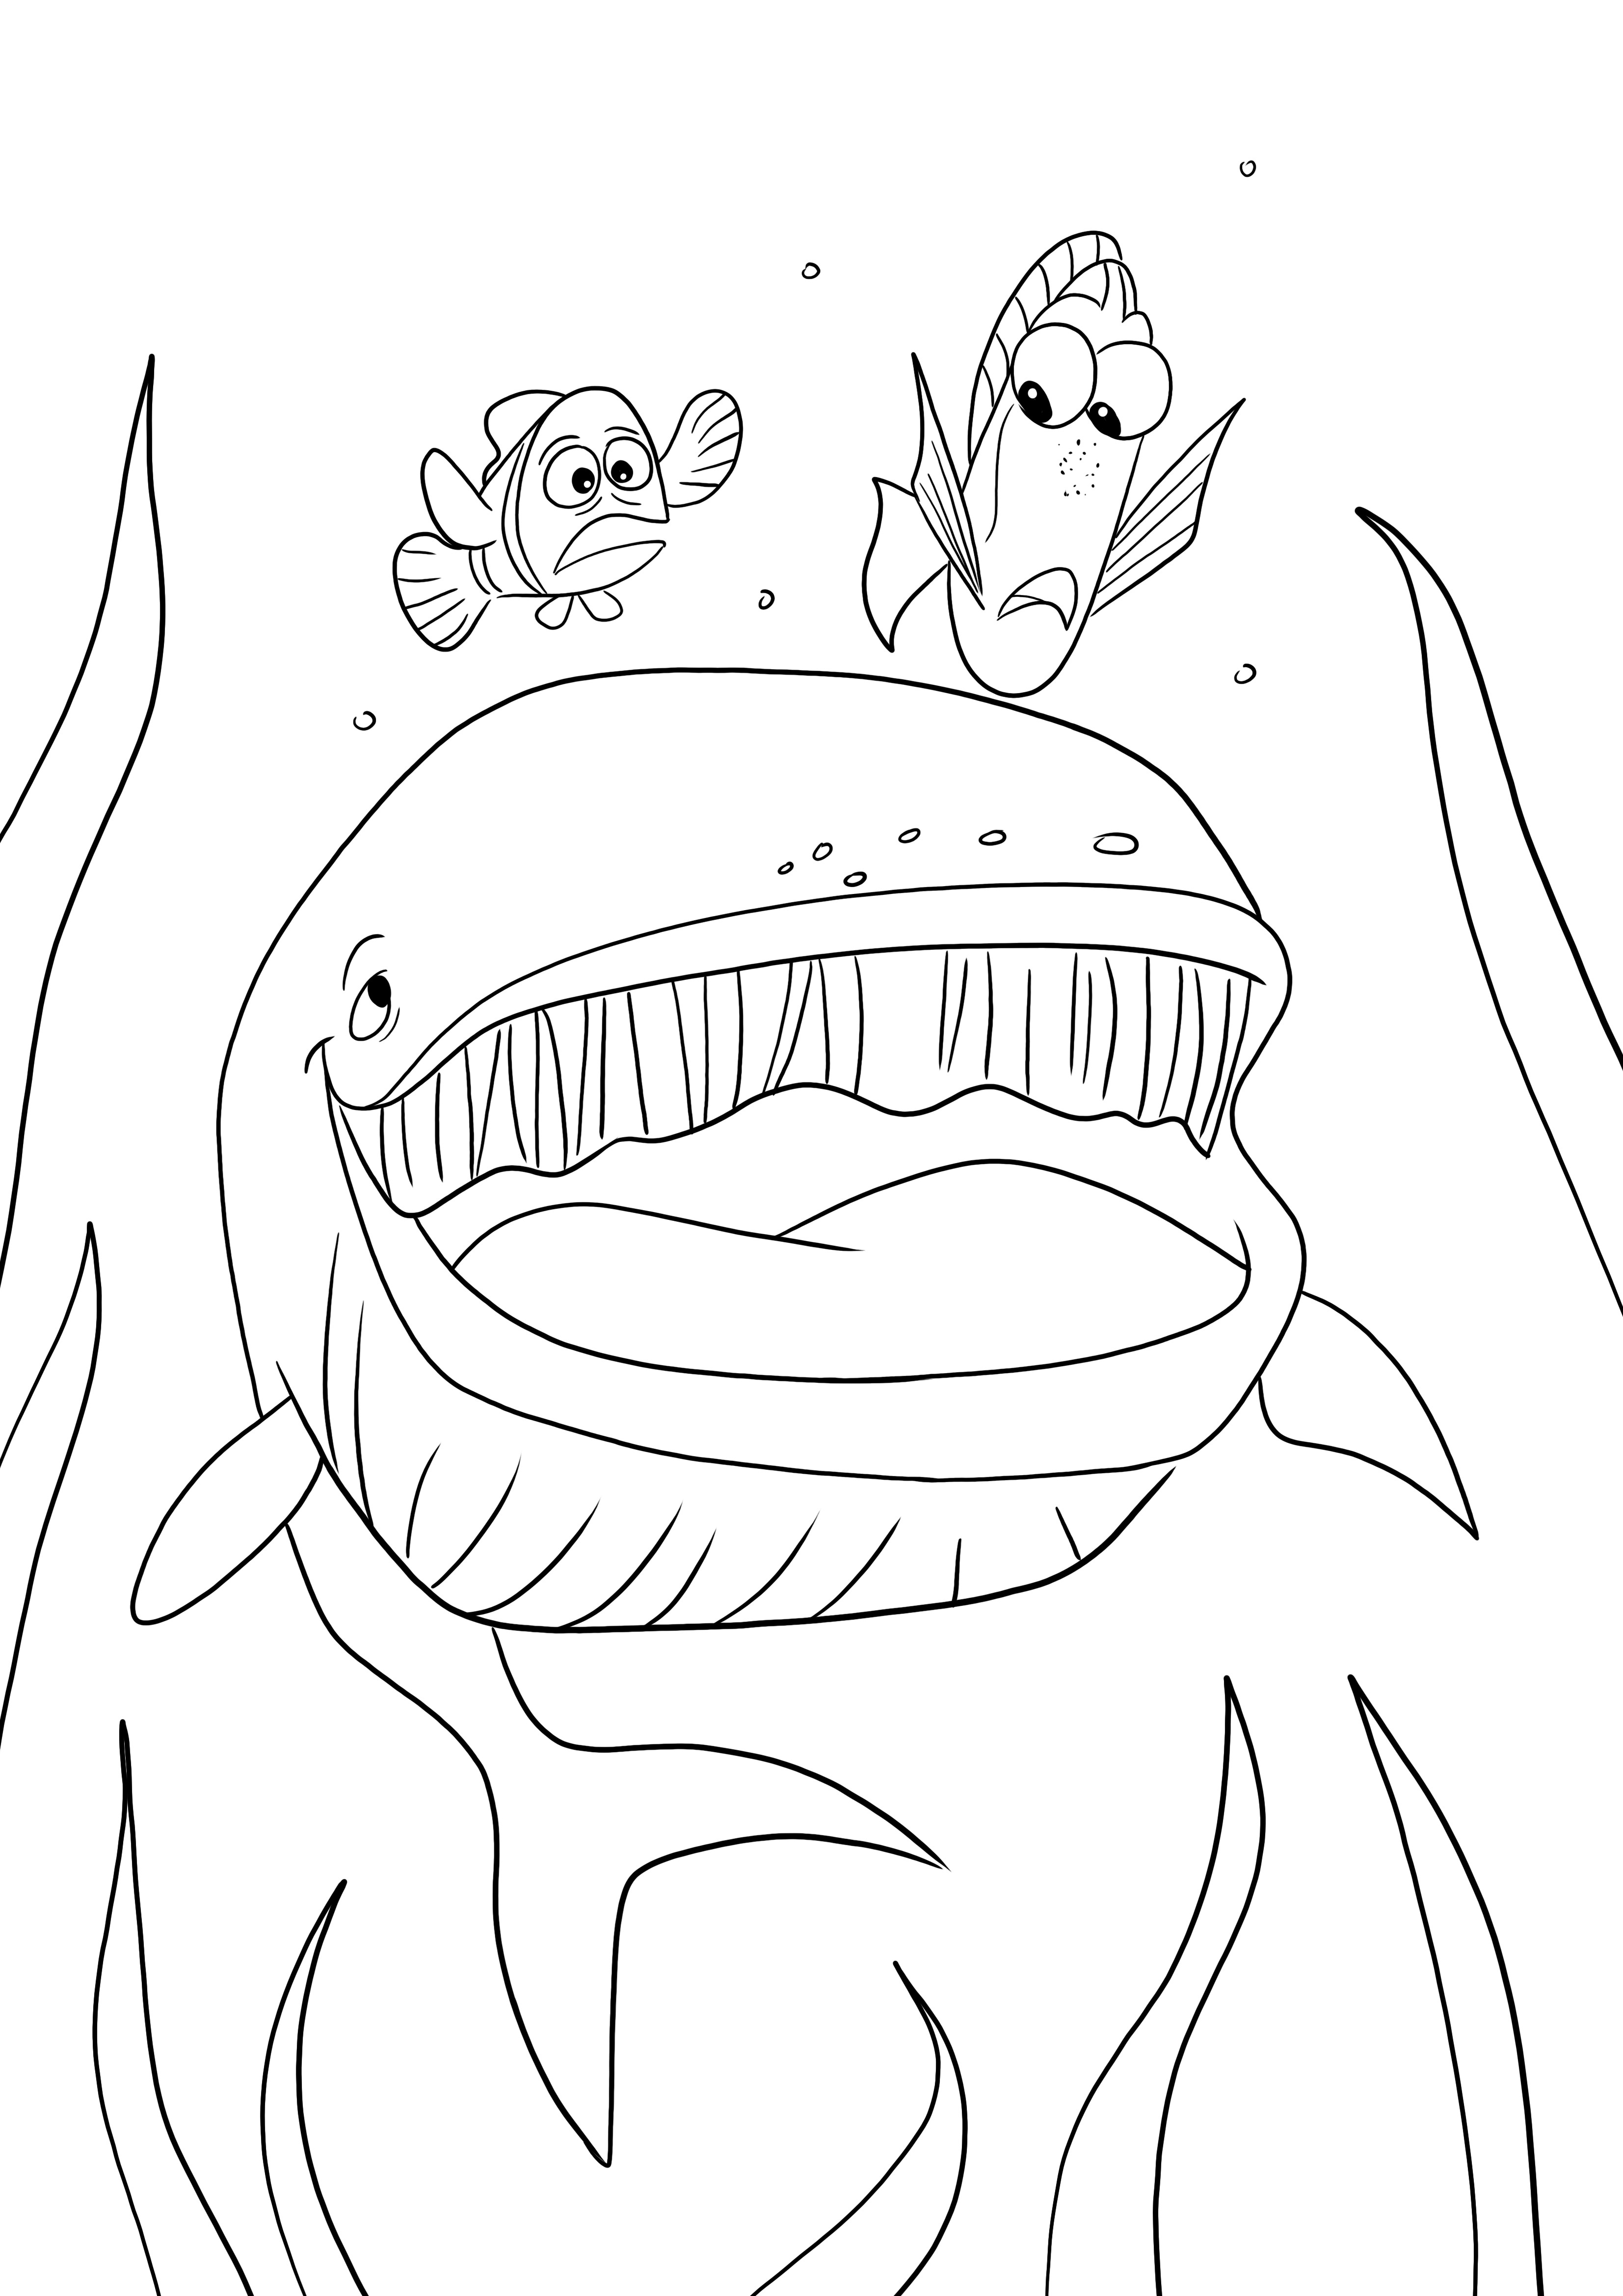 Dory -Nemo y la ballena gratis para descargar o imprimir y colorear para niños